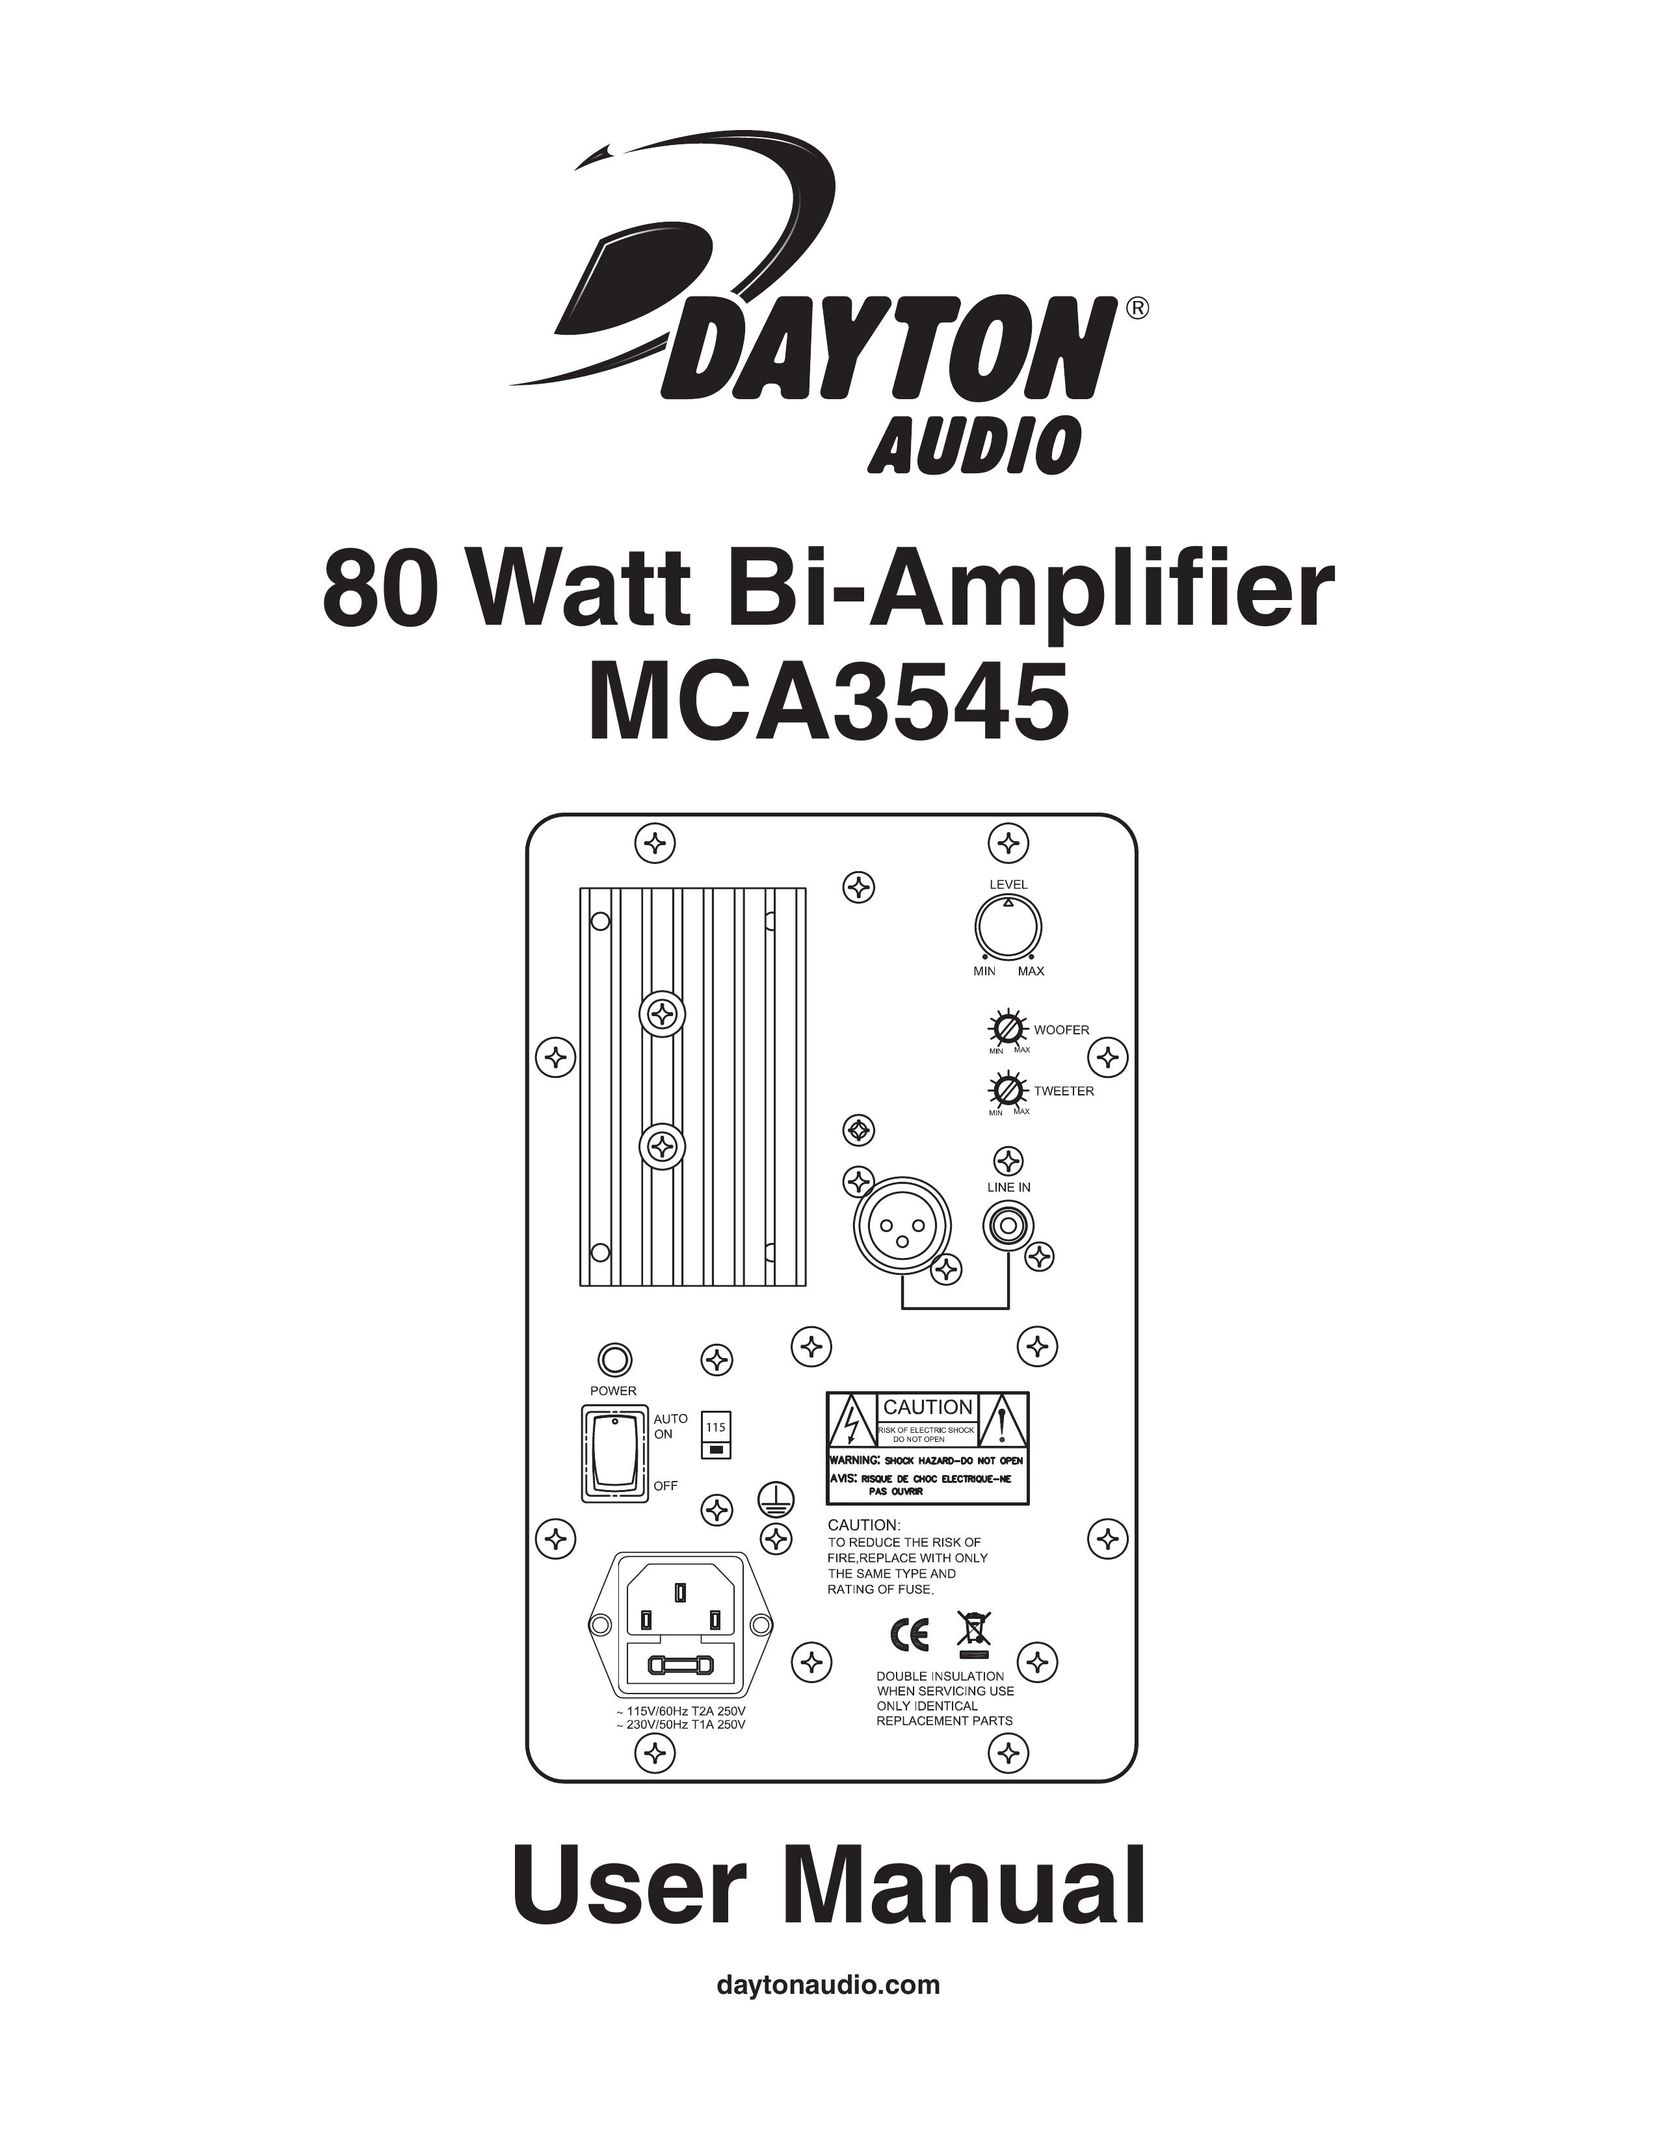 Dayton MCA3545 Doll User Manual